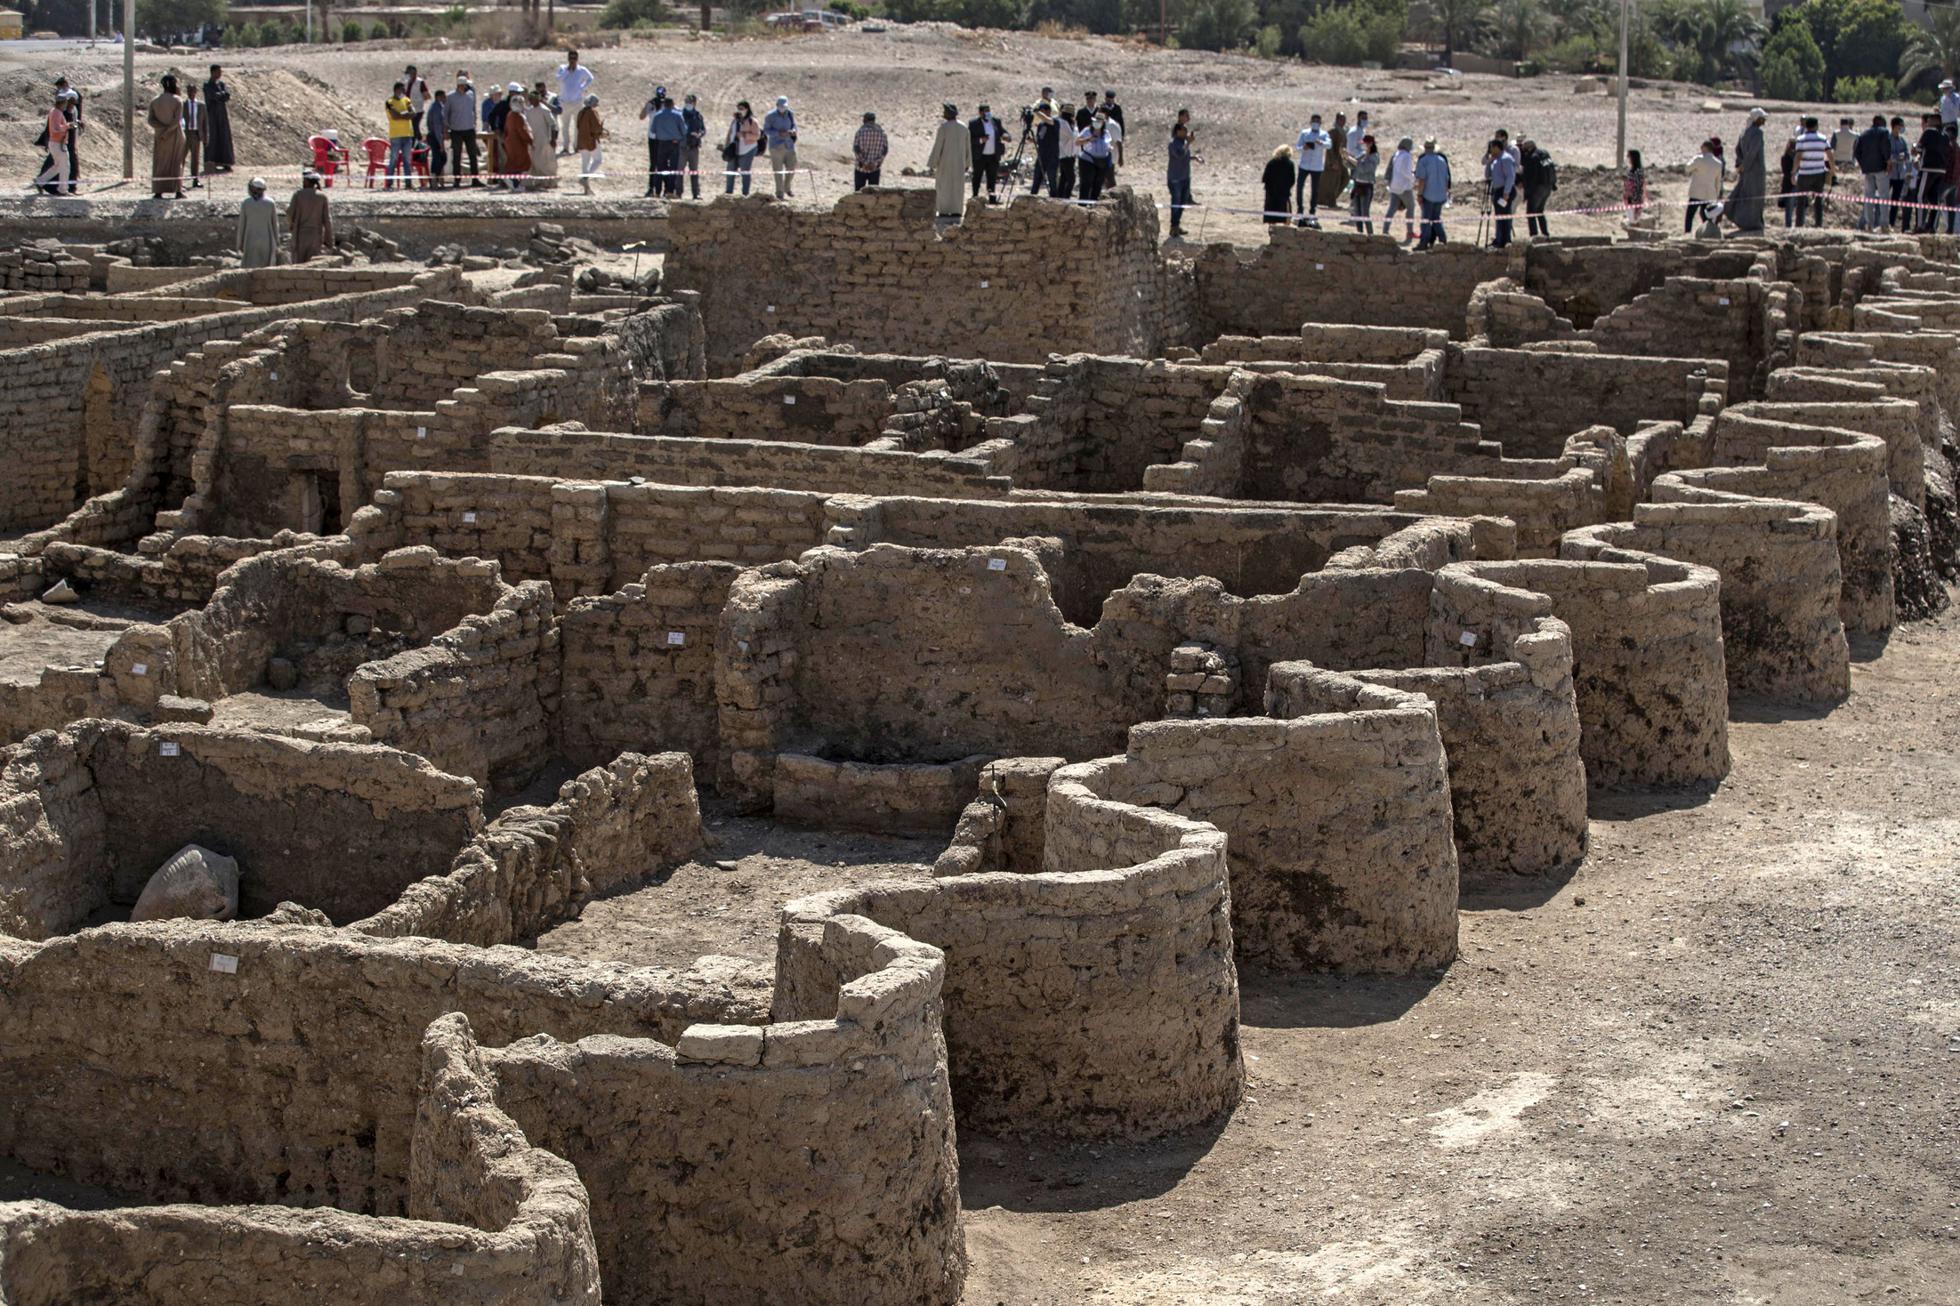 सय वर्षपछि ठूलो खोजः इजिप्टको बालुवाभित्र भेटियो ३४०० वर्ष पुरानो 'सुनको शहर'